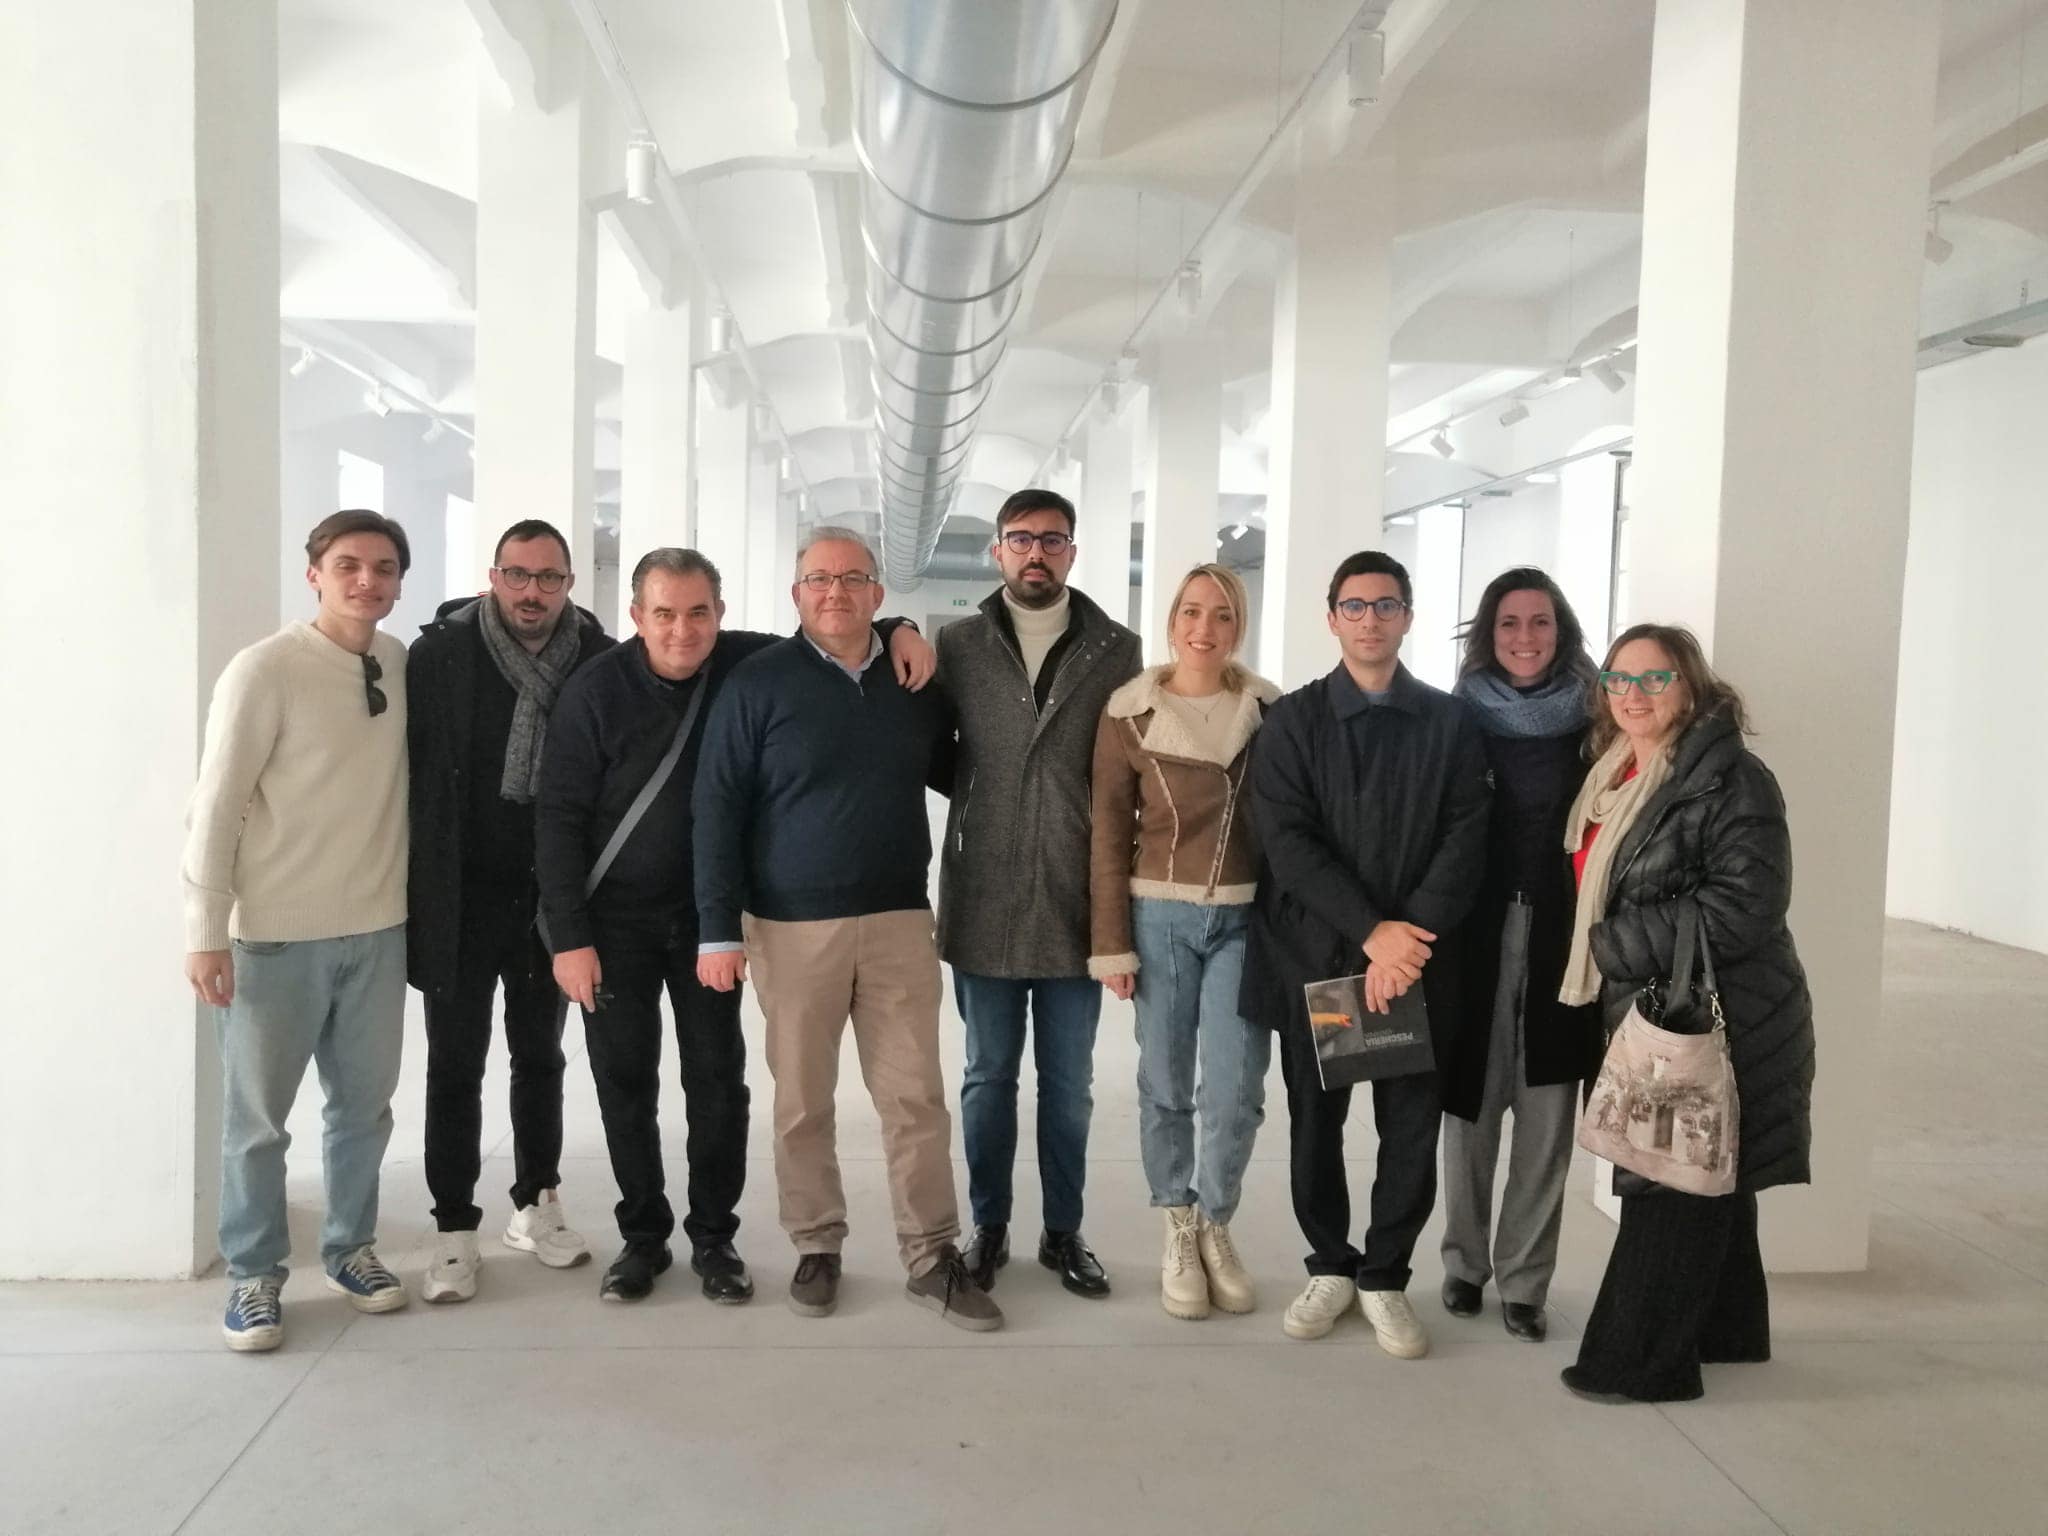 A Catania sta per nascere un nuovo museo multidiscipliare